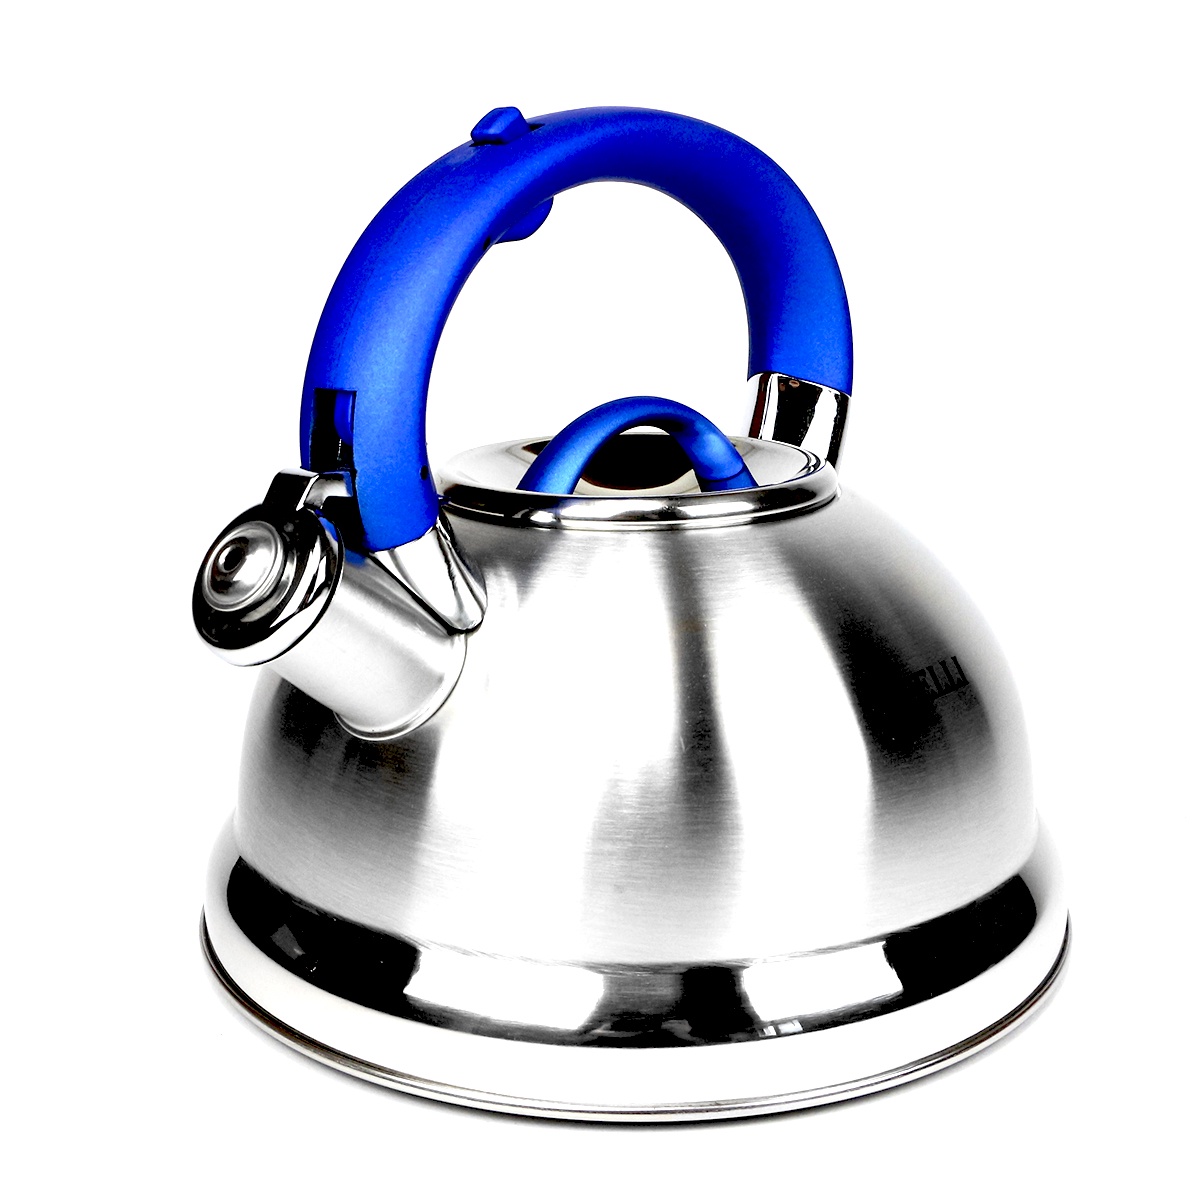 фото Чайник заварочный Kelli Чайник со свистком, серебристый, синий